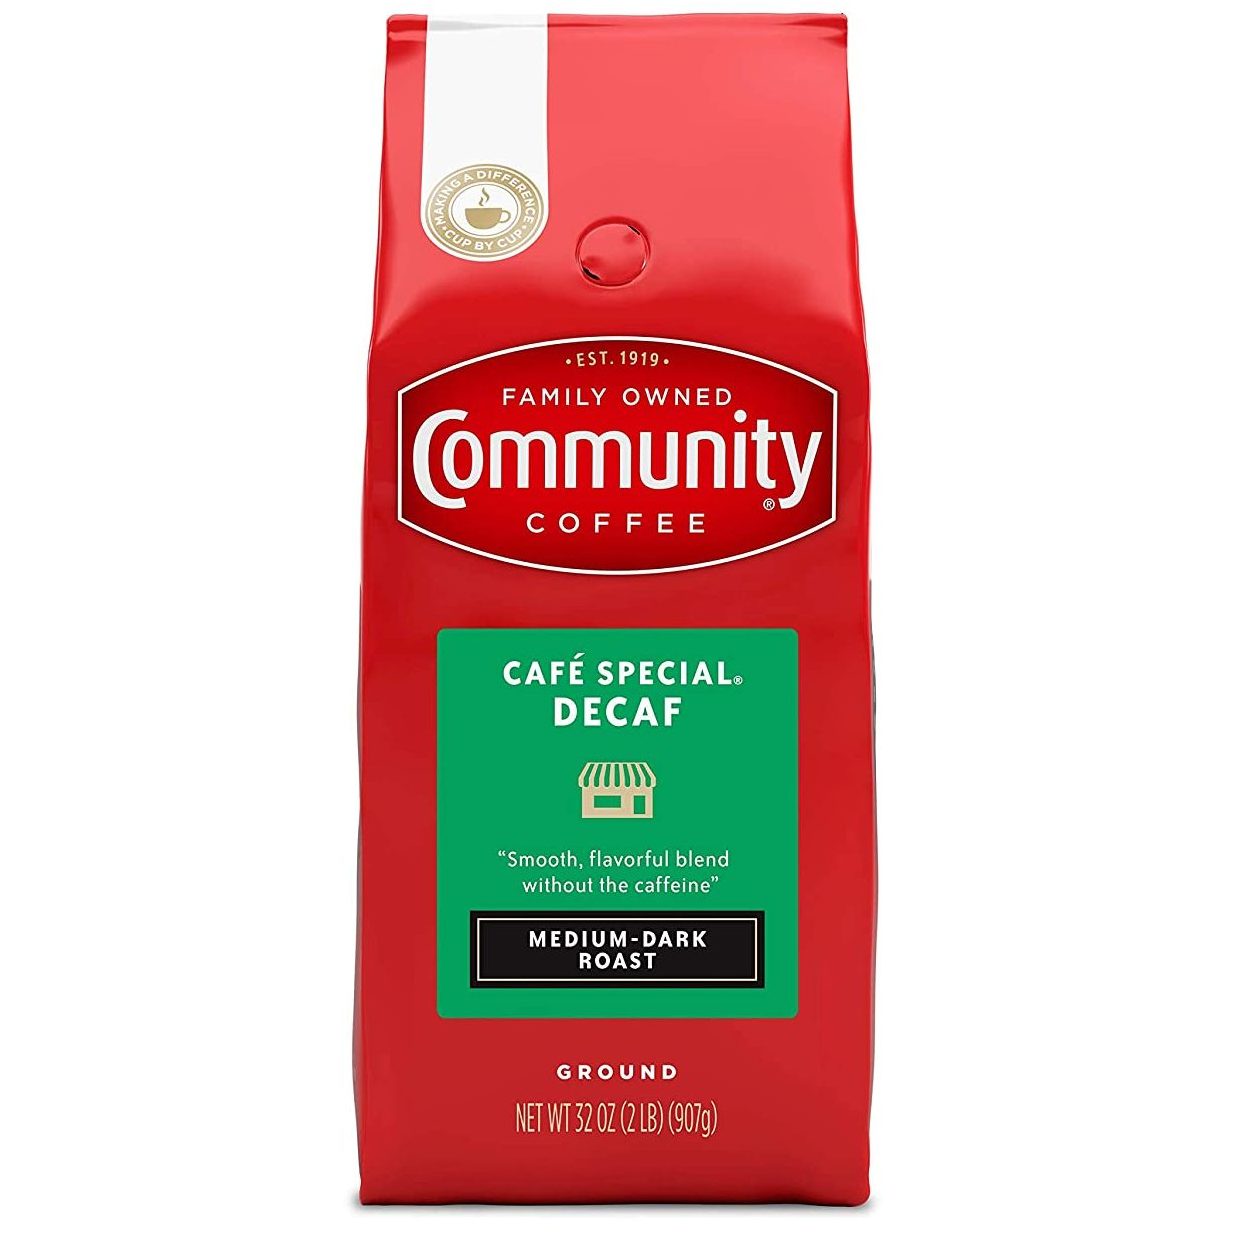 Community Coffee Café Special Decaf Ground Coffee, Medium Dark Roast